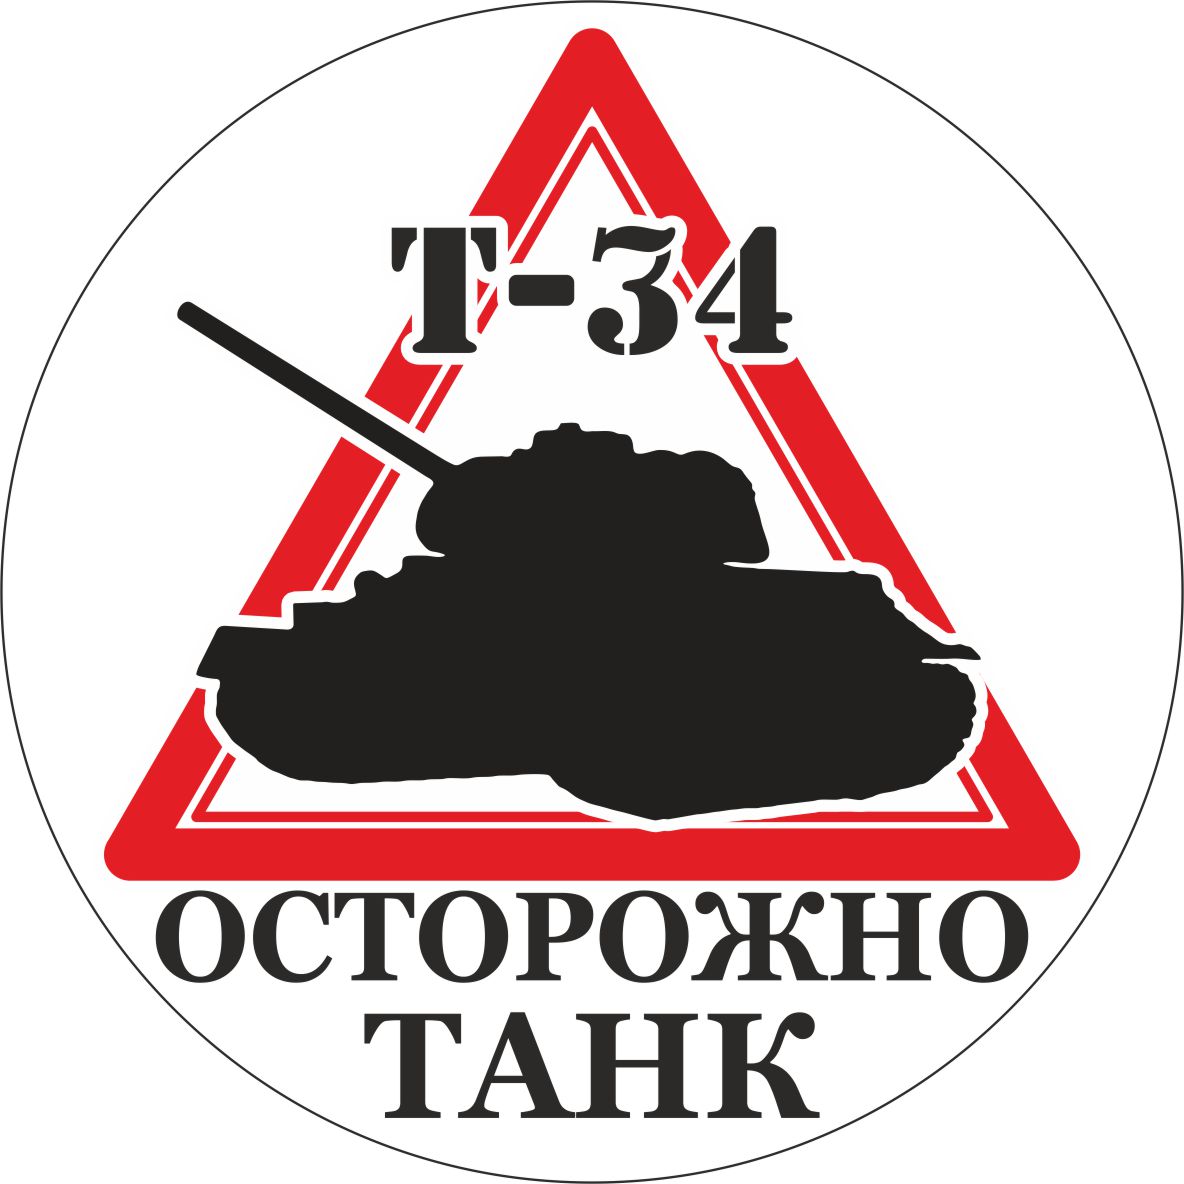 Наклейка Т-34 для поклонников игры "Мир танков" и не только!